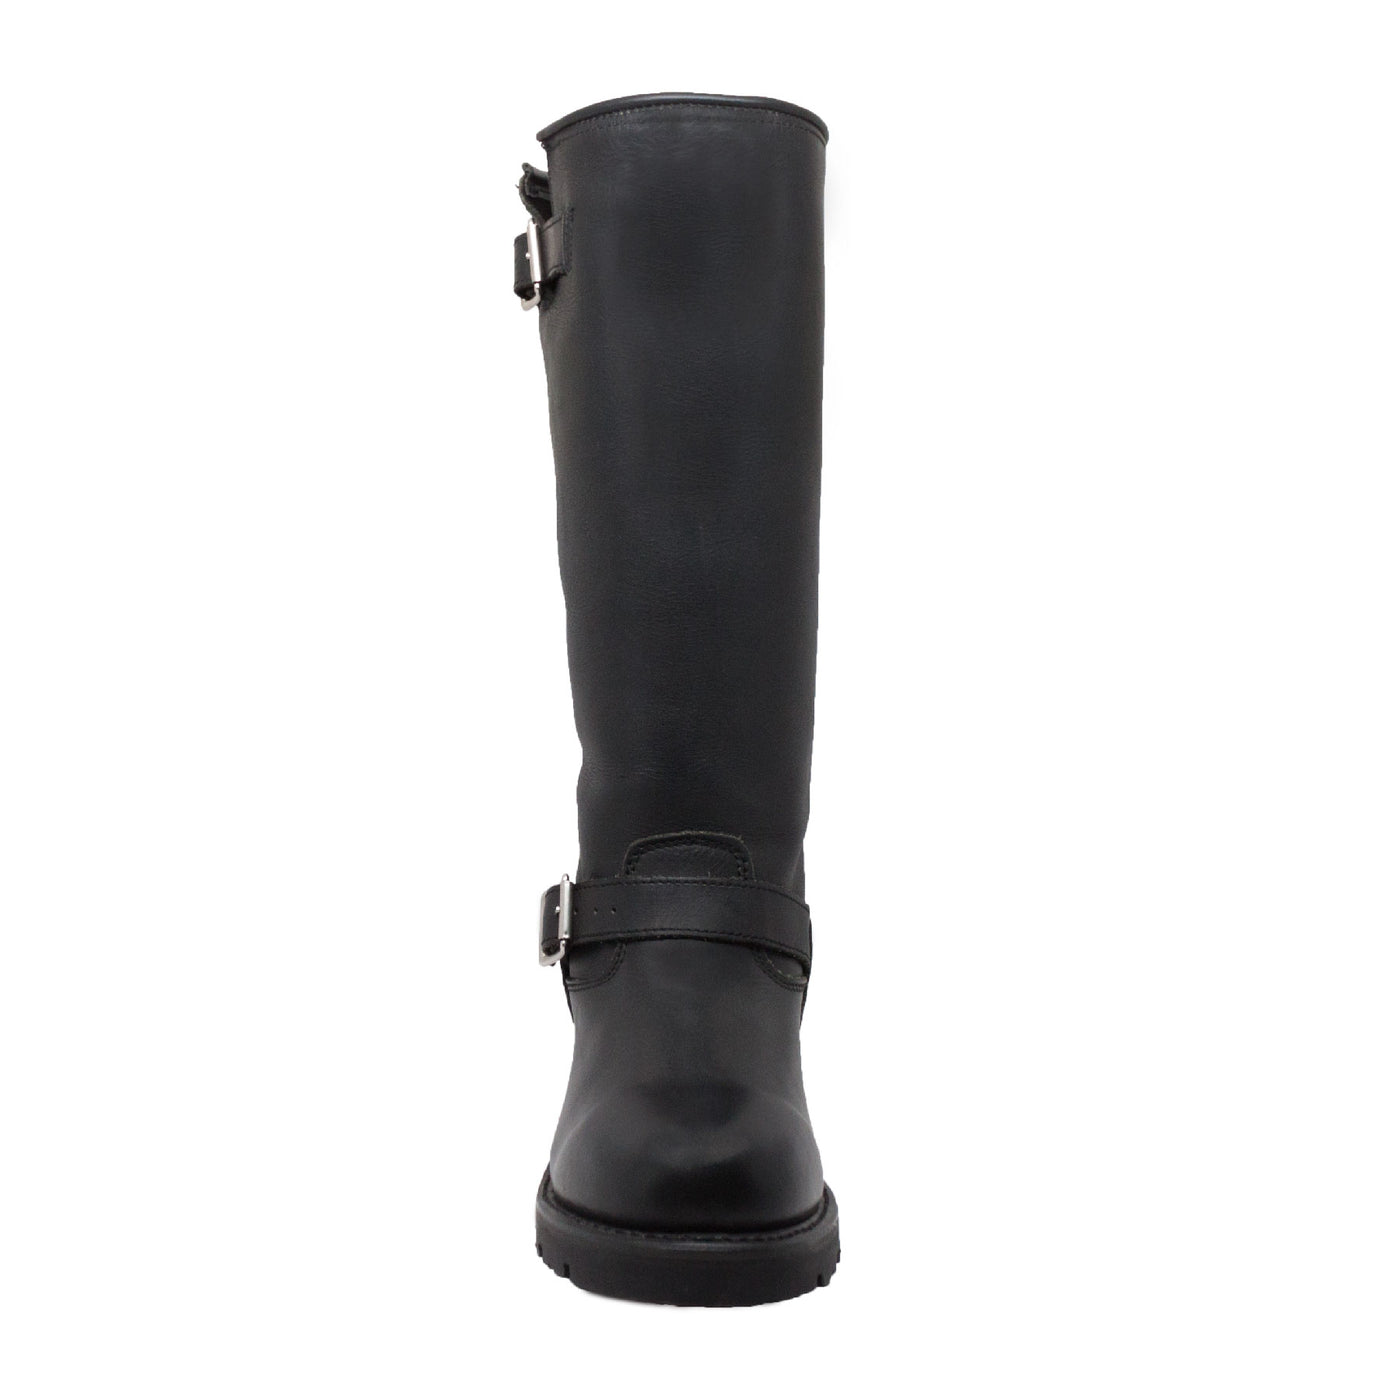 Men's 16" Black Engineer Biker Boot - 1443 - Shop Genuine Leather men & women's boots online | AdTecFootWear